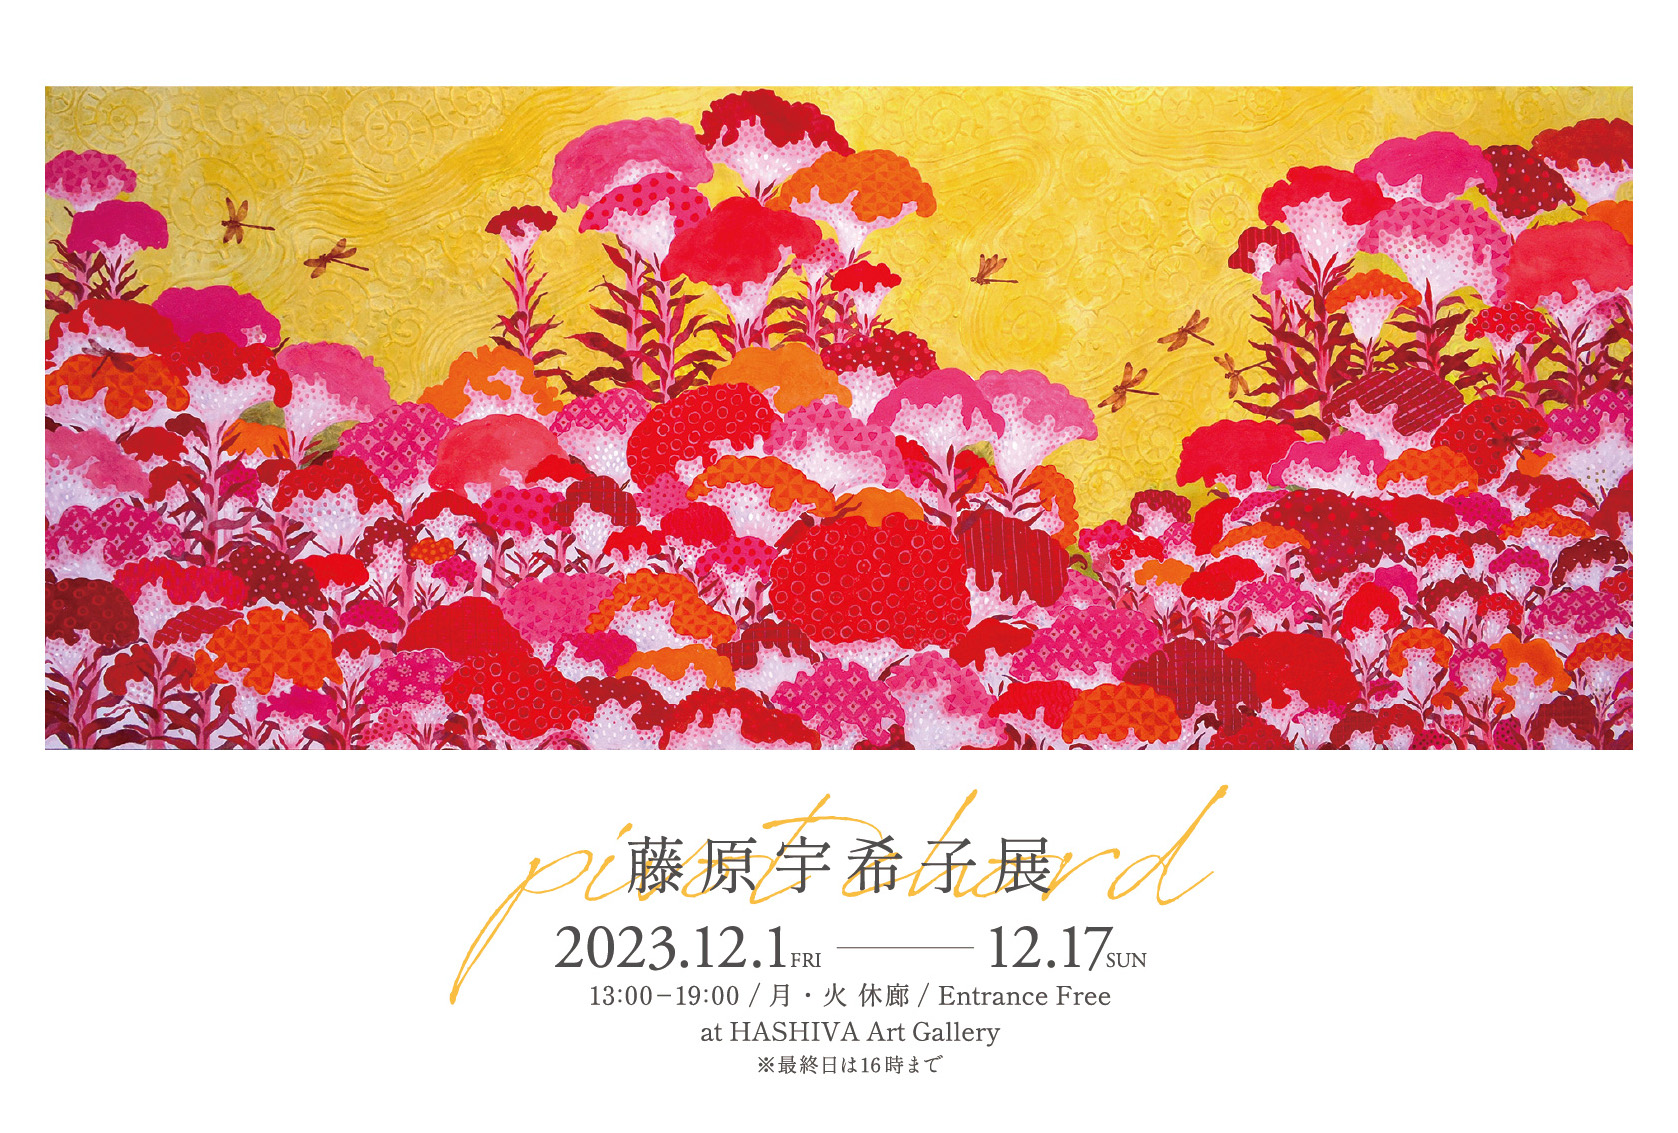 日本画家・藤原宇希子の展示会「pivot chord」のポスター